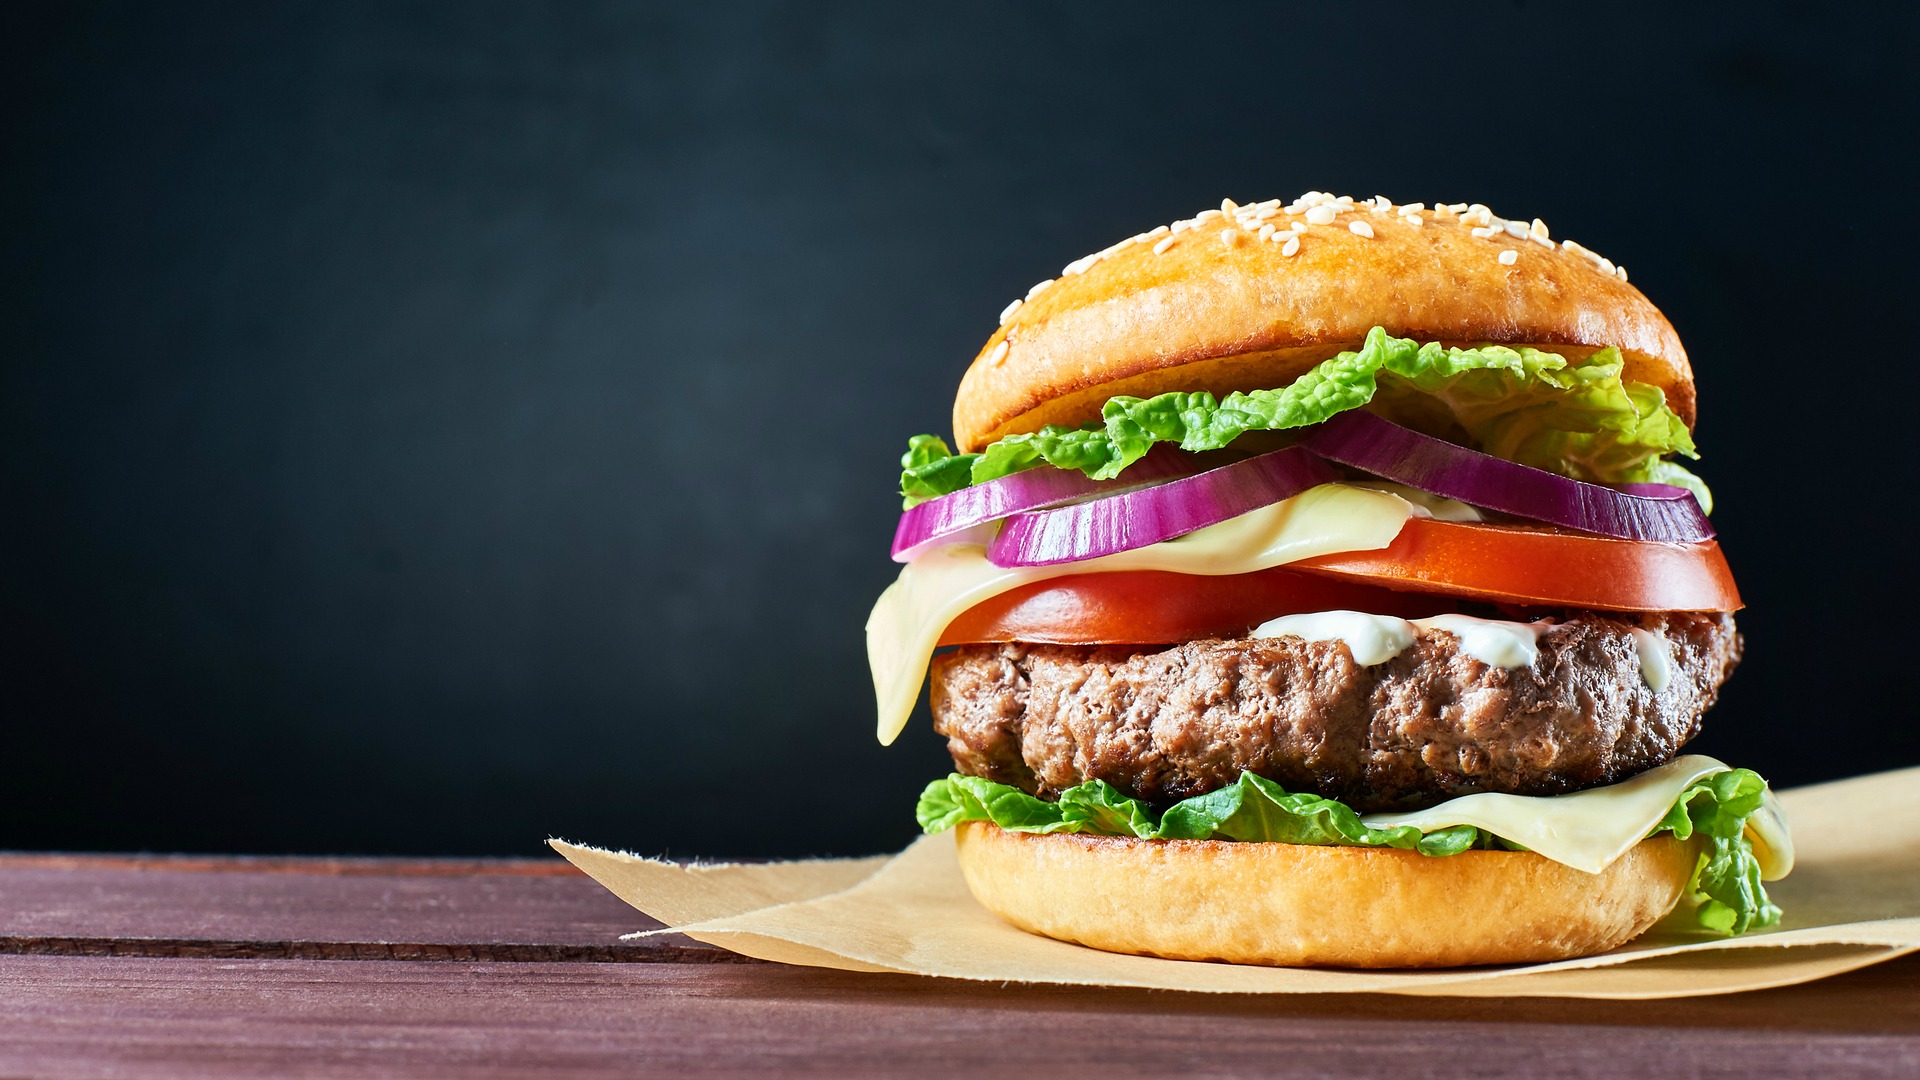 Injusticia ecuación gravedad Publicidad para hamburguesas | Contrata mejores servicios marketing